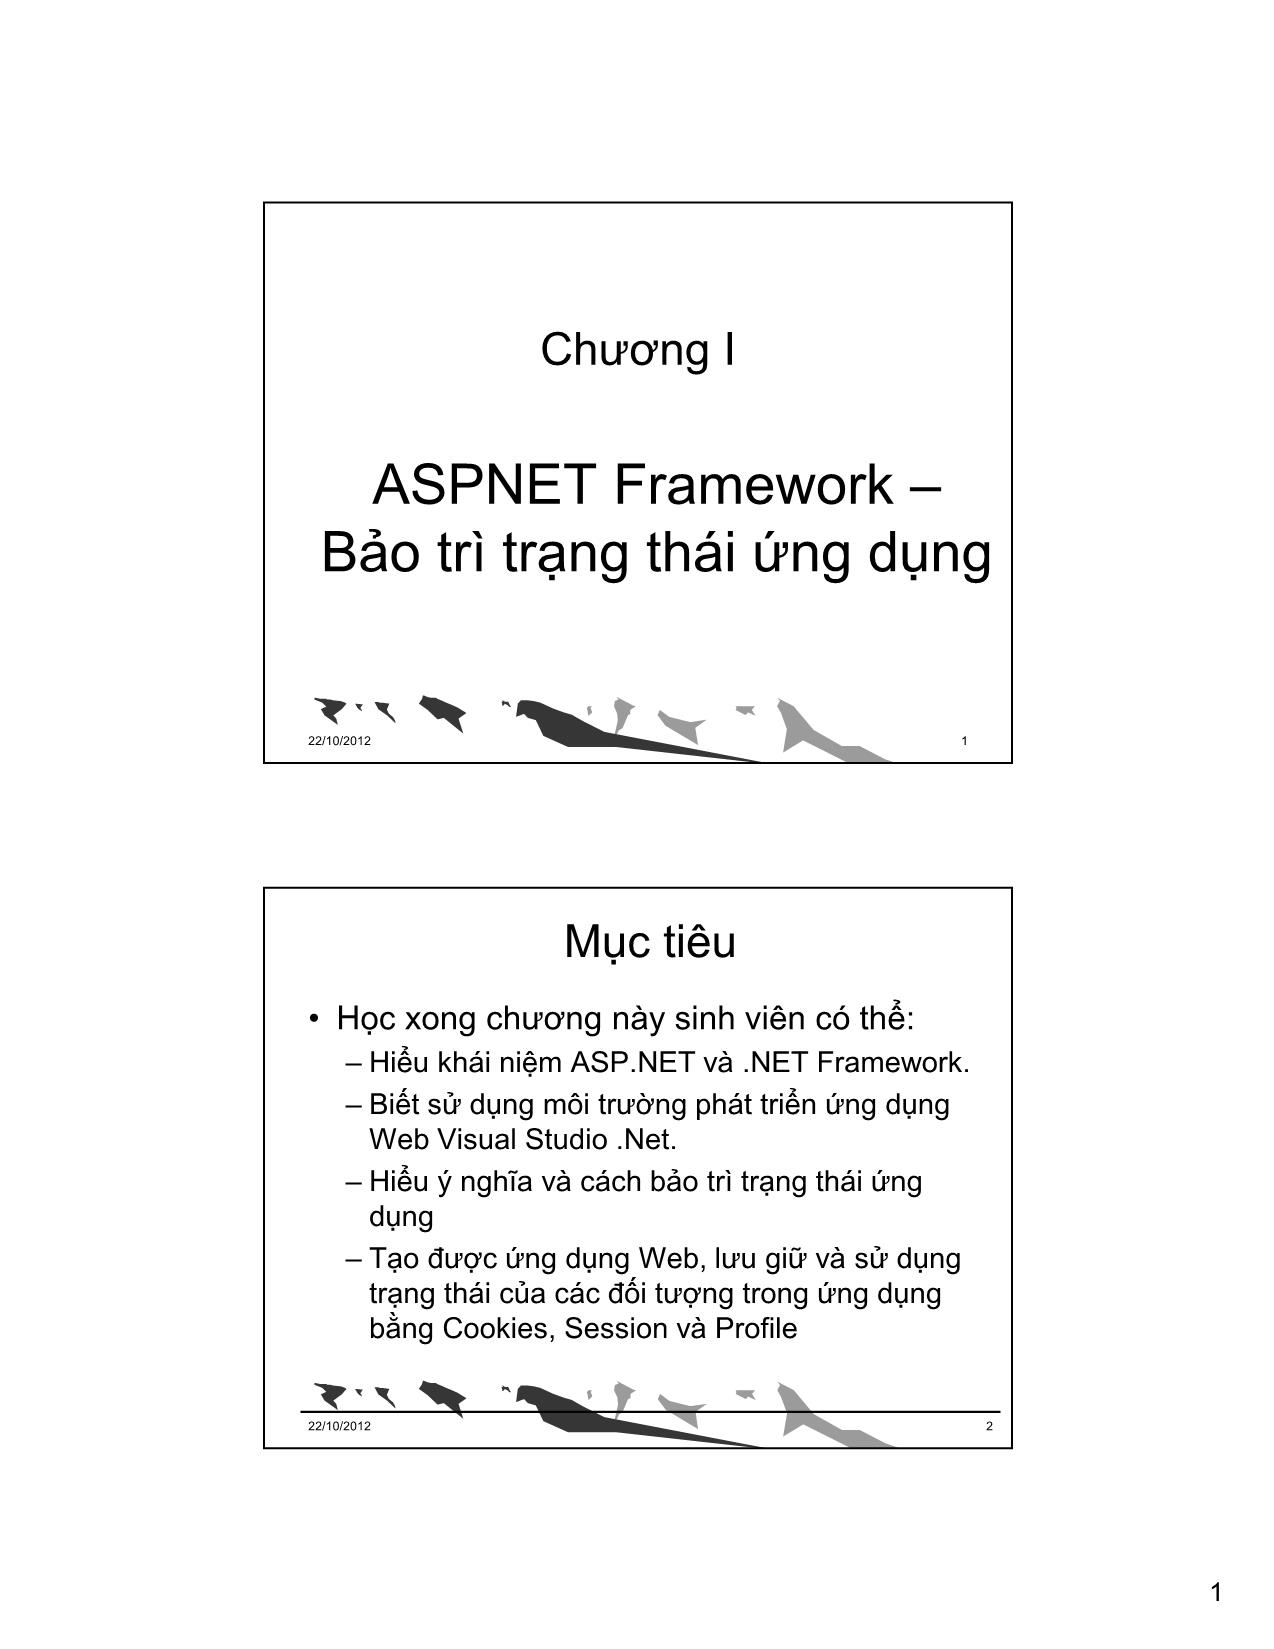 ASPNET Framework – Bảo trì trạng thái ứng dụng trang 1